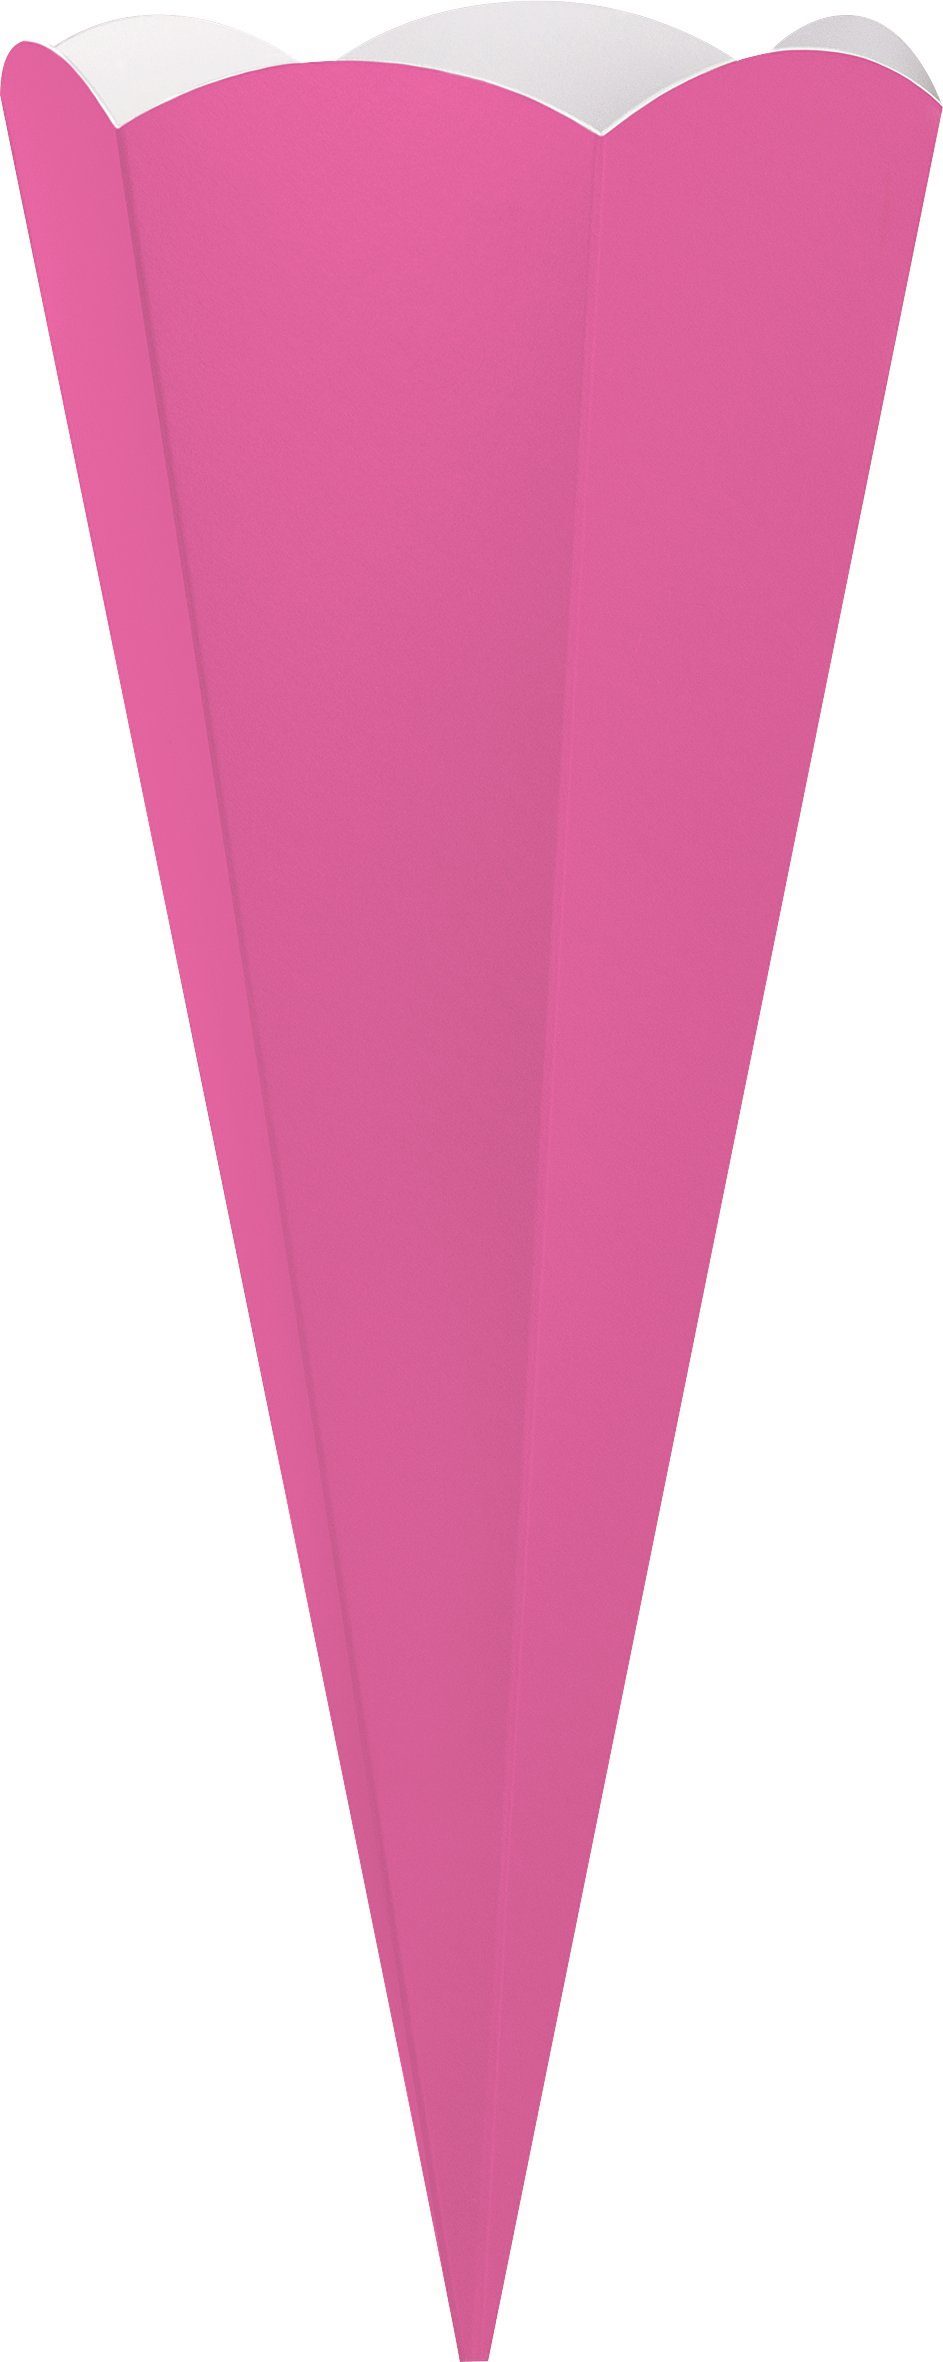 Heyda Schultüten-Zuschnitt, Pink 69 cm Schultüte